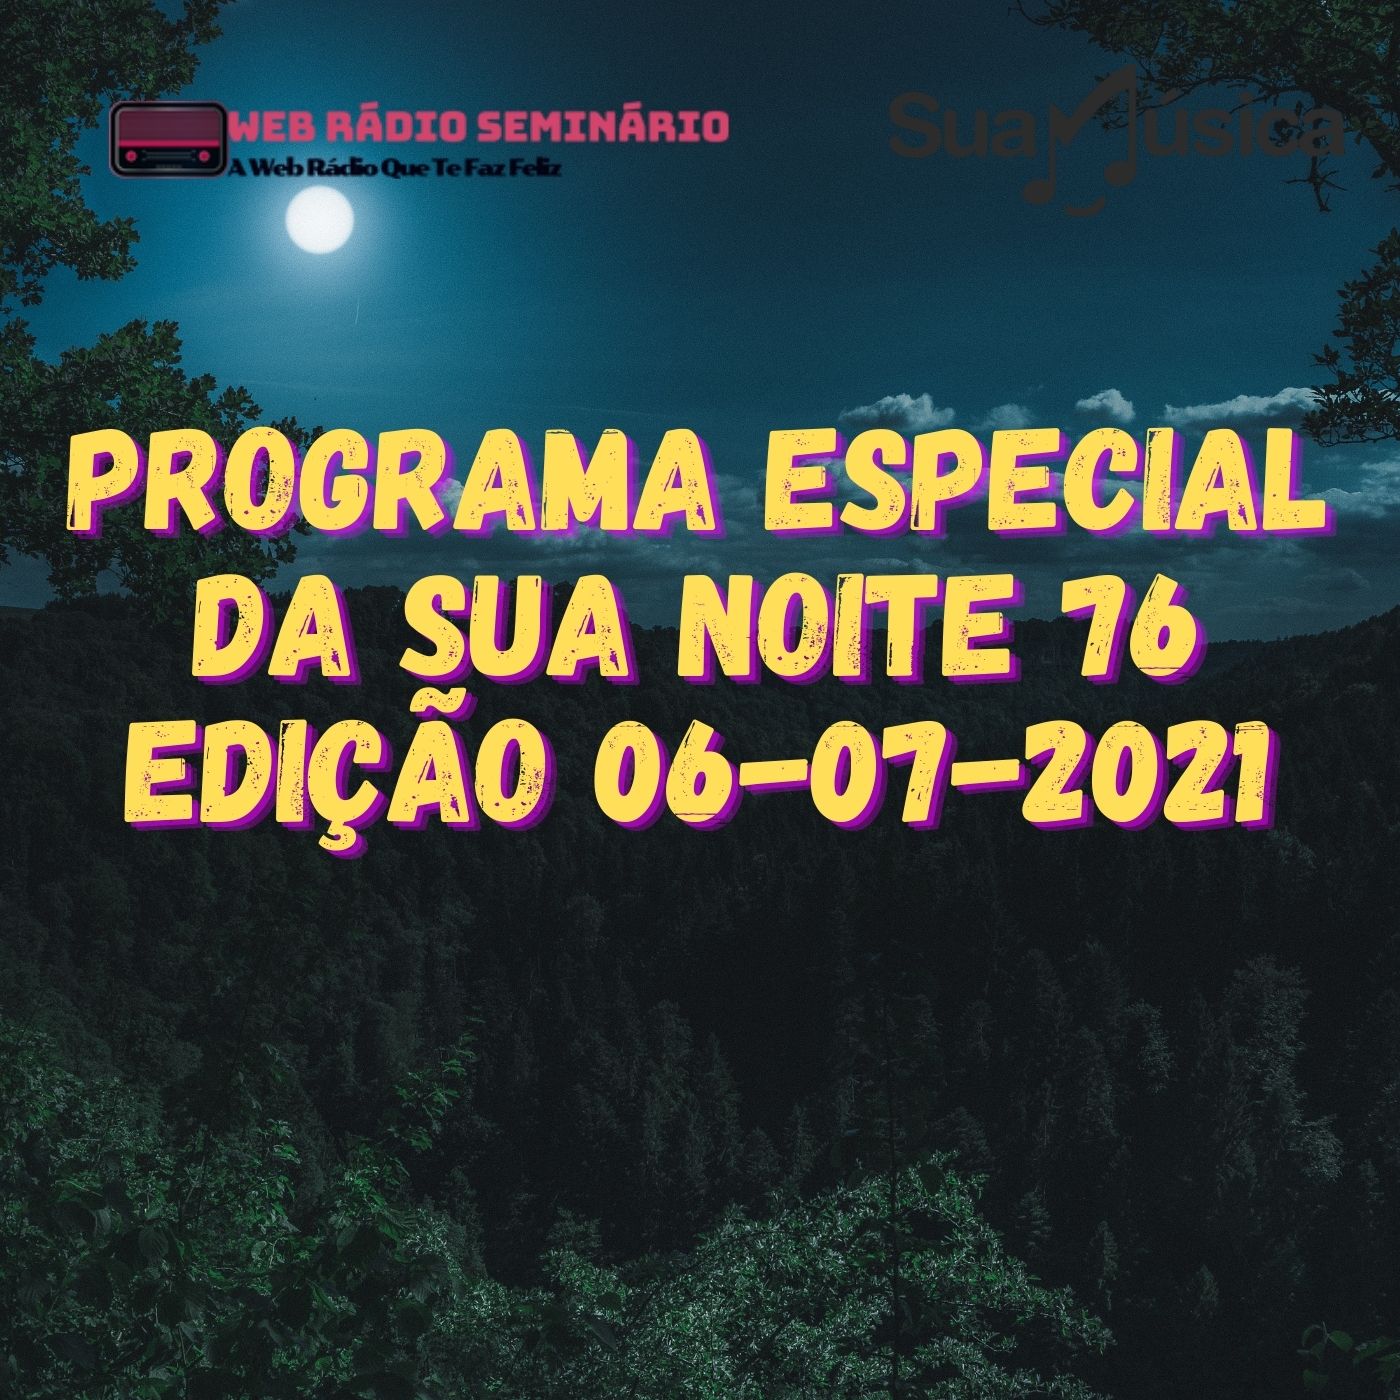 PROGRAMA ESPECIAL DA SUA NOITE-76 EDIÇAO 06-07-2021